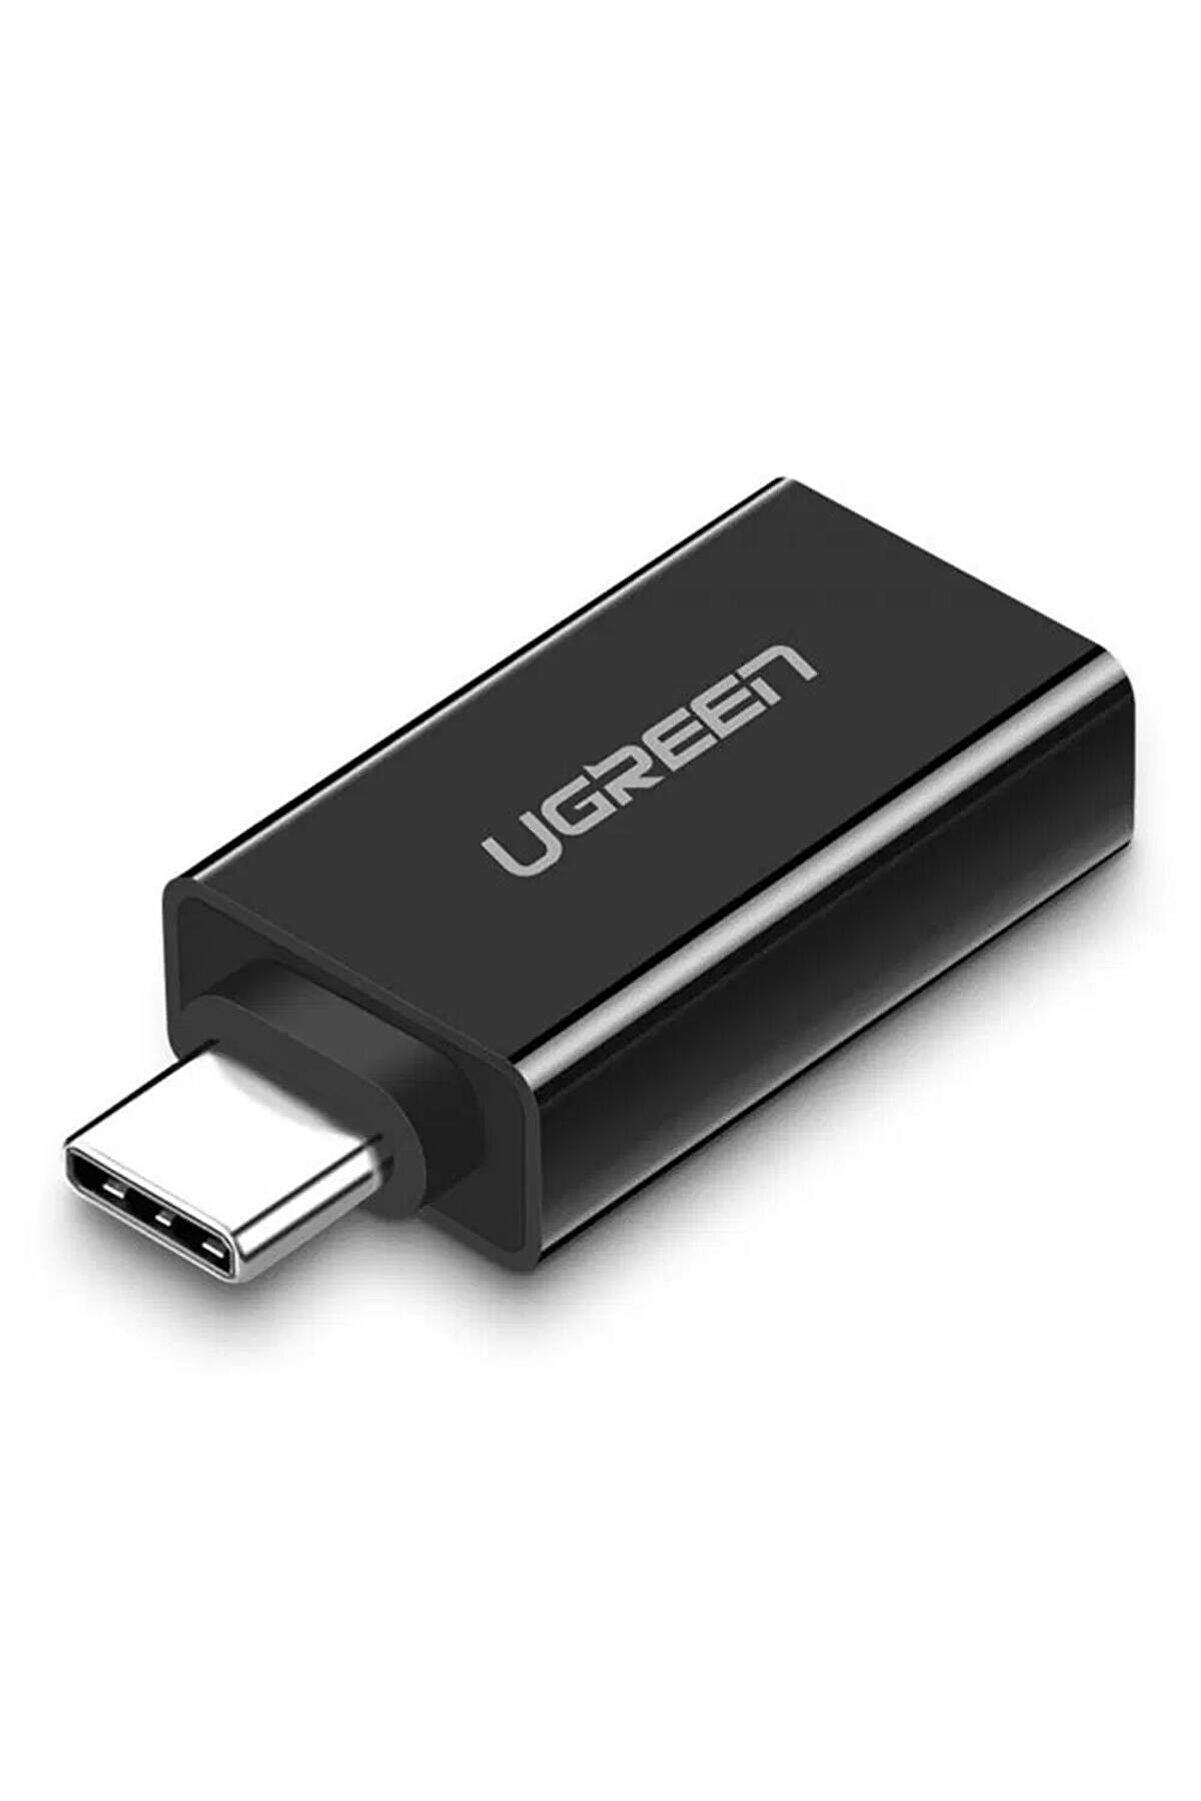 Ugreen Usb 3.0 Type-c Dönüştürücü Adaptör Siyah